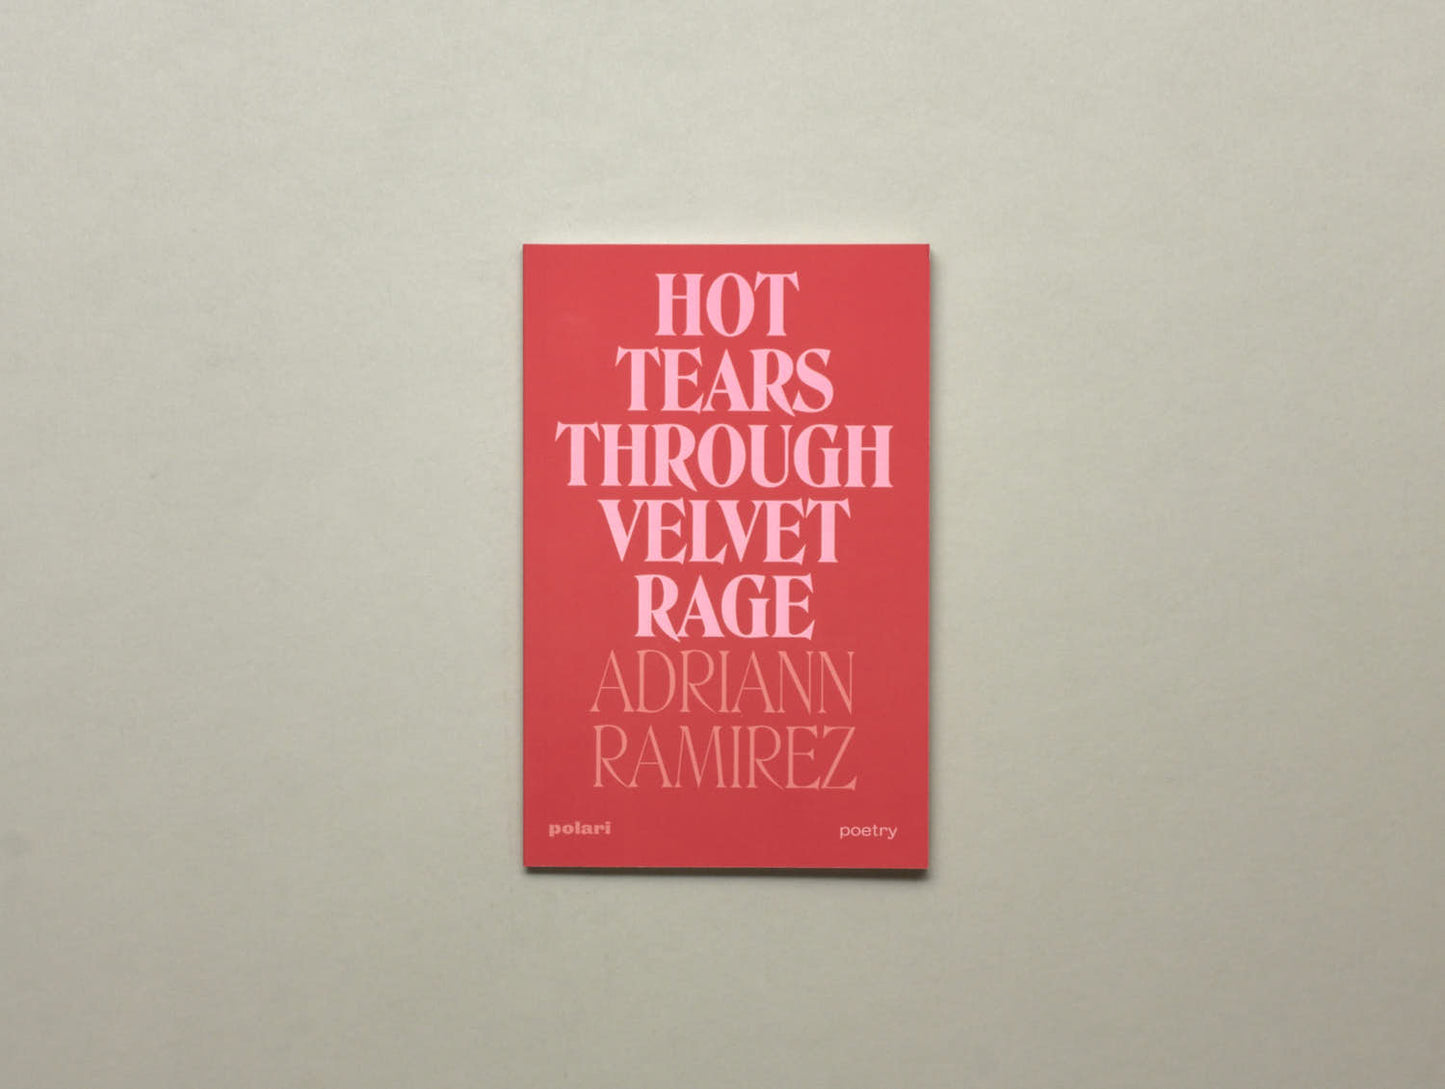 Adriann Ramirez, Hot Tears Through Velvet Rage